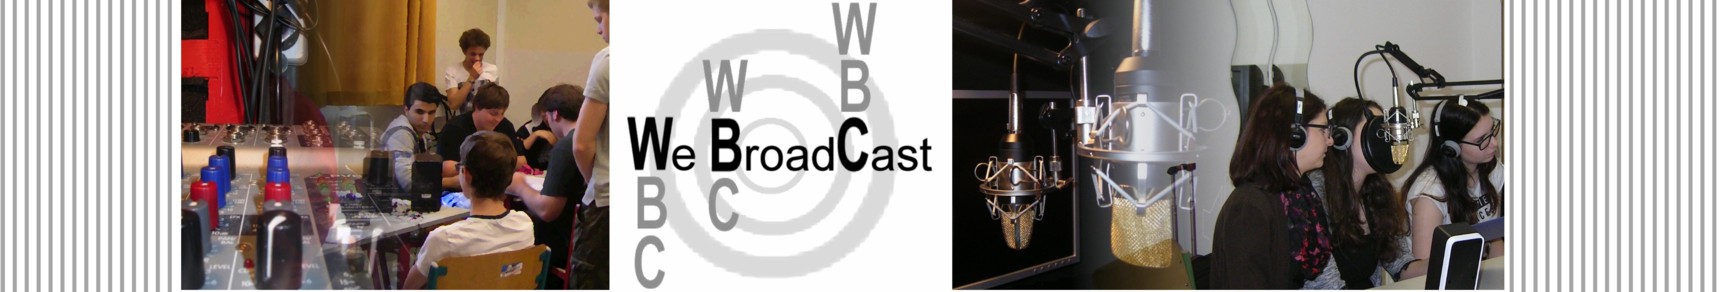 WBC- We BroadCast